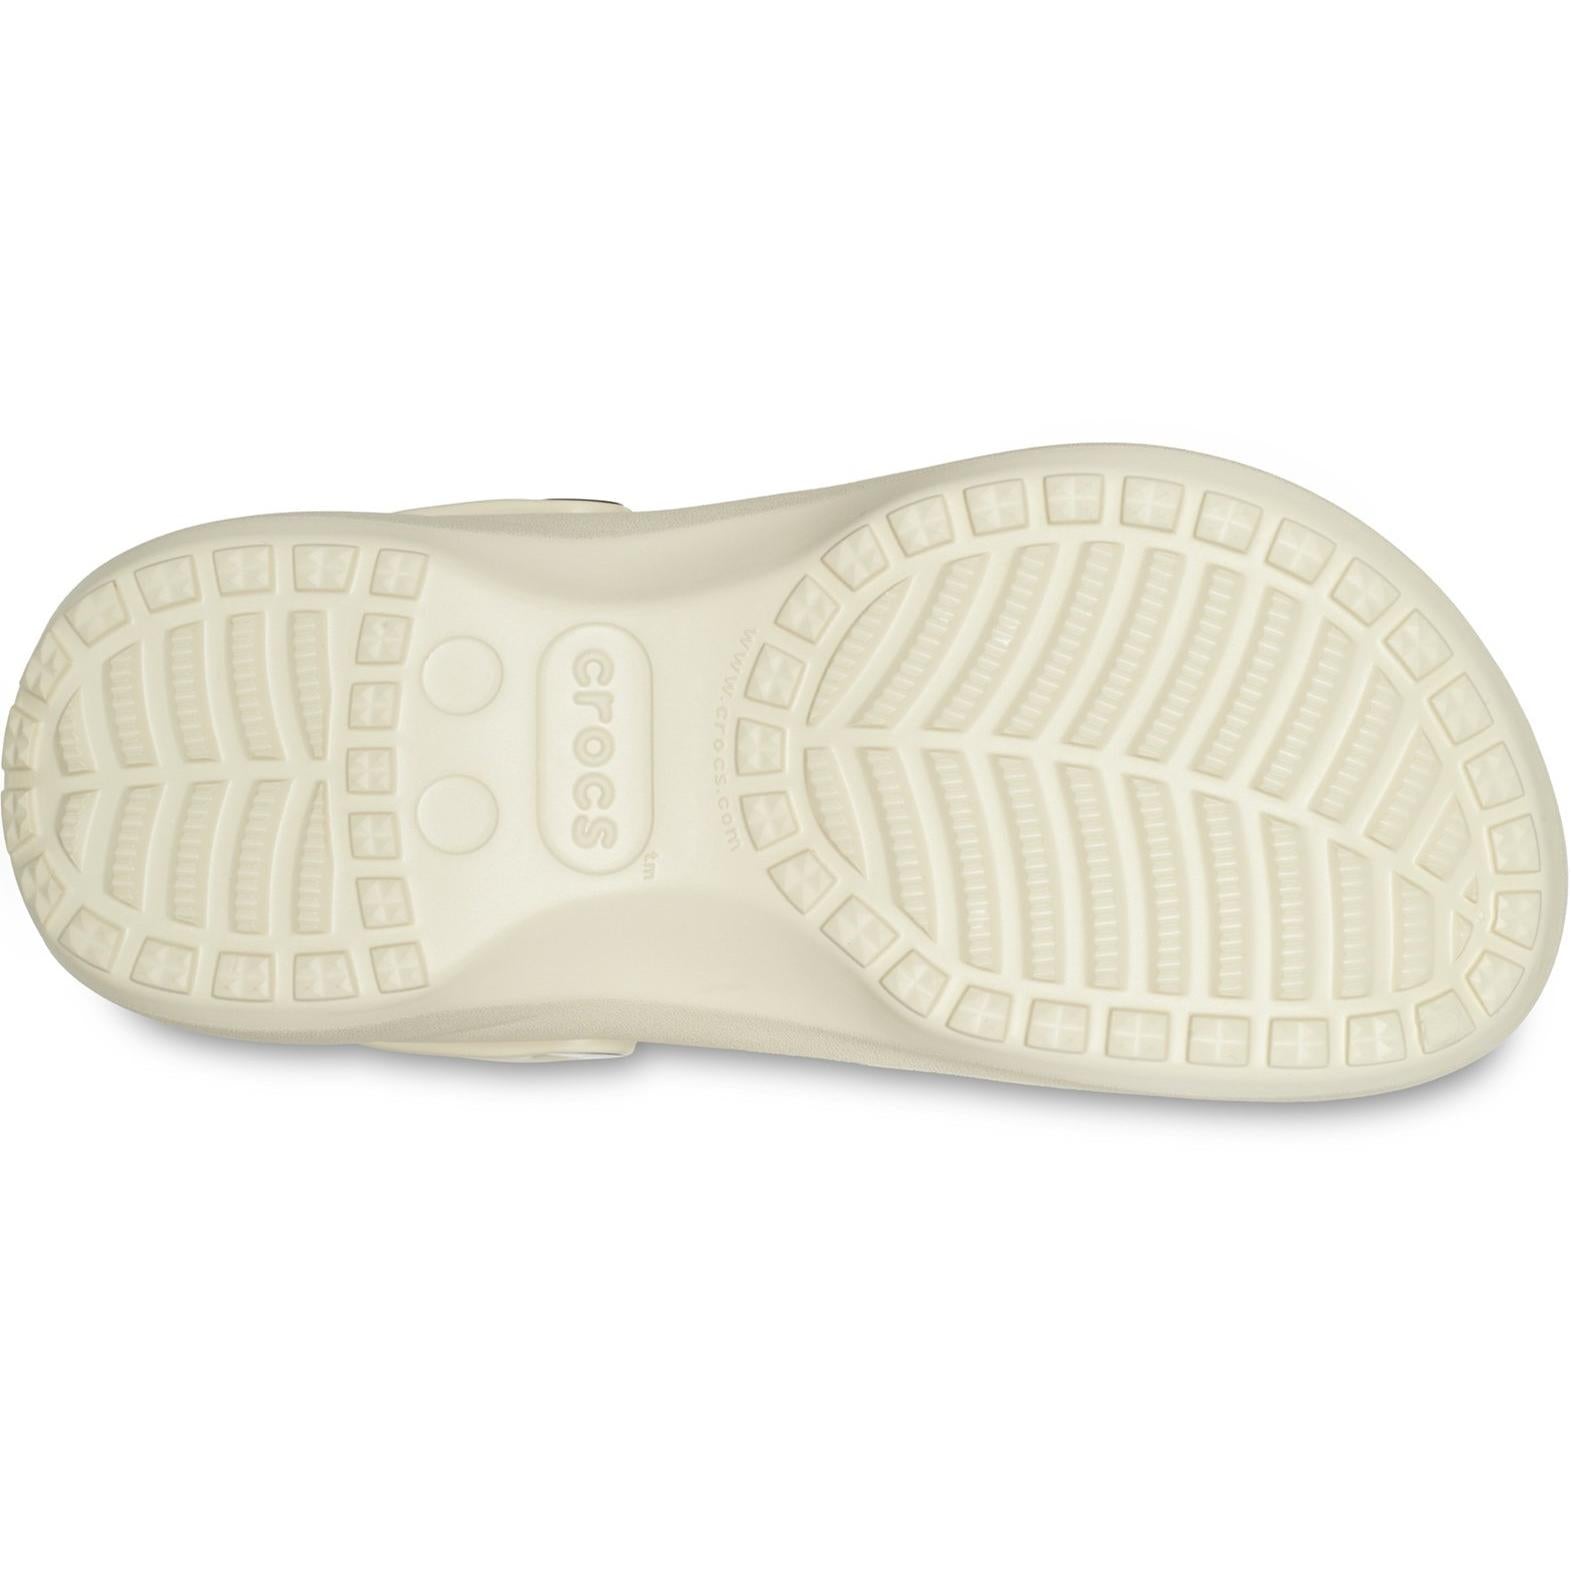 Crocs Classic Platform Lined Clog Sandals